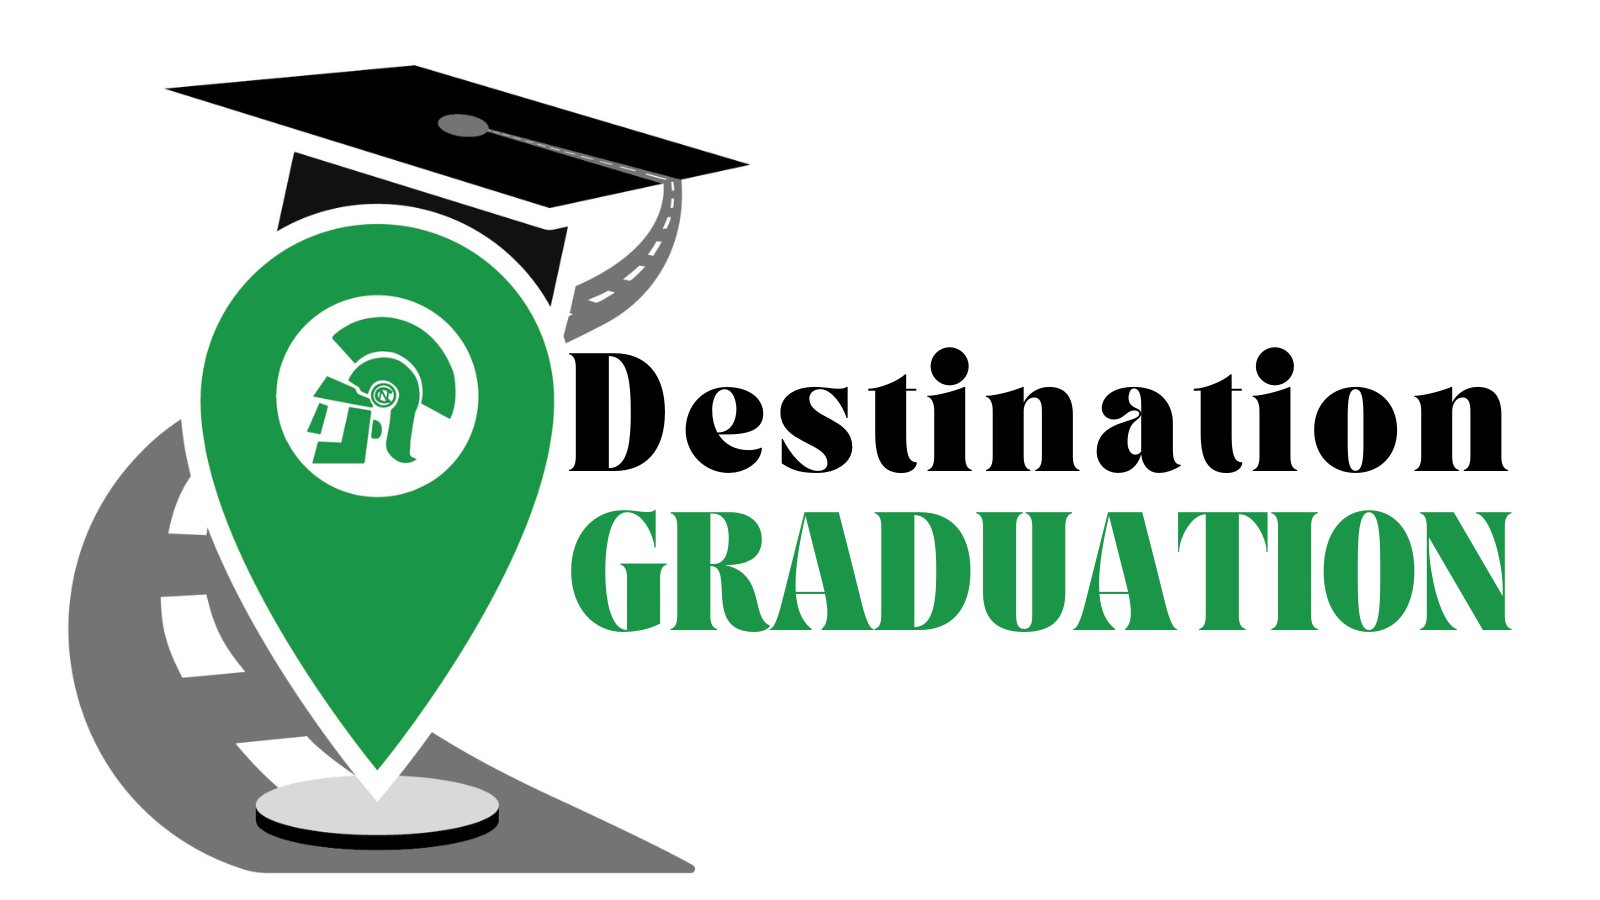 #DestinationGraduation logo